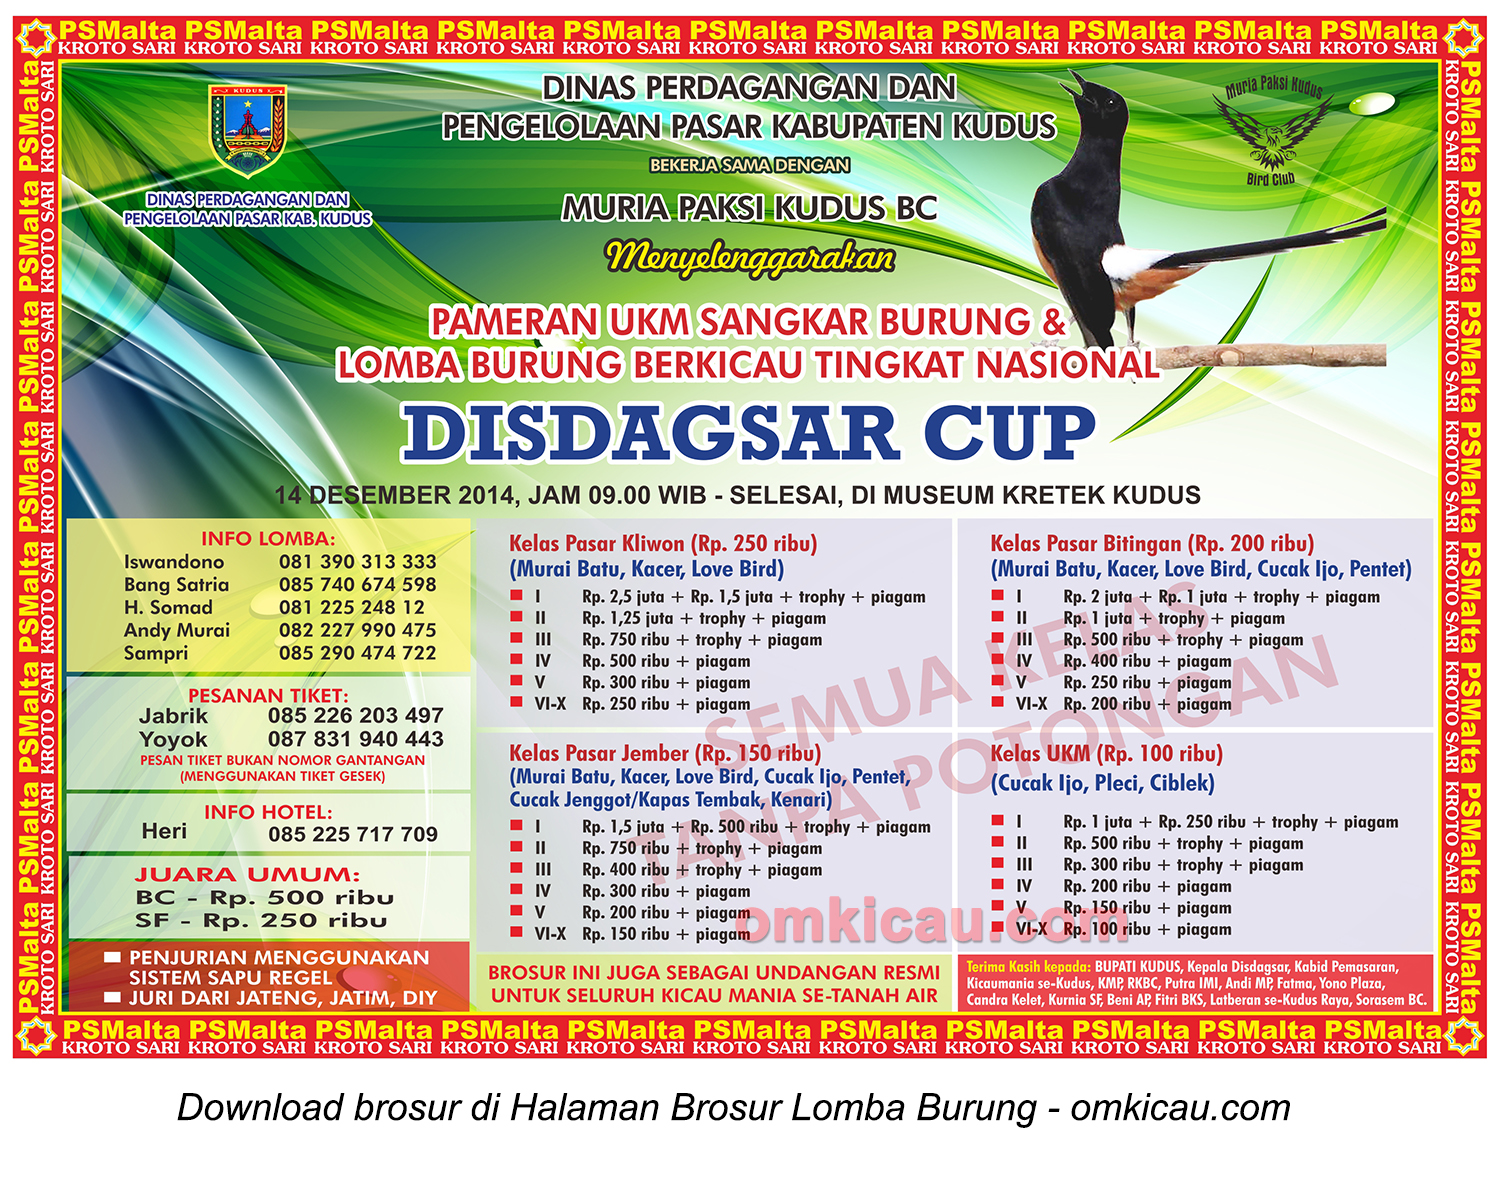 Brosur Lomba Burung Disdagsar Cup Kudus, 14 Desember 2014